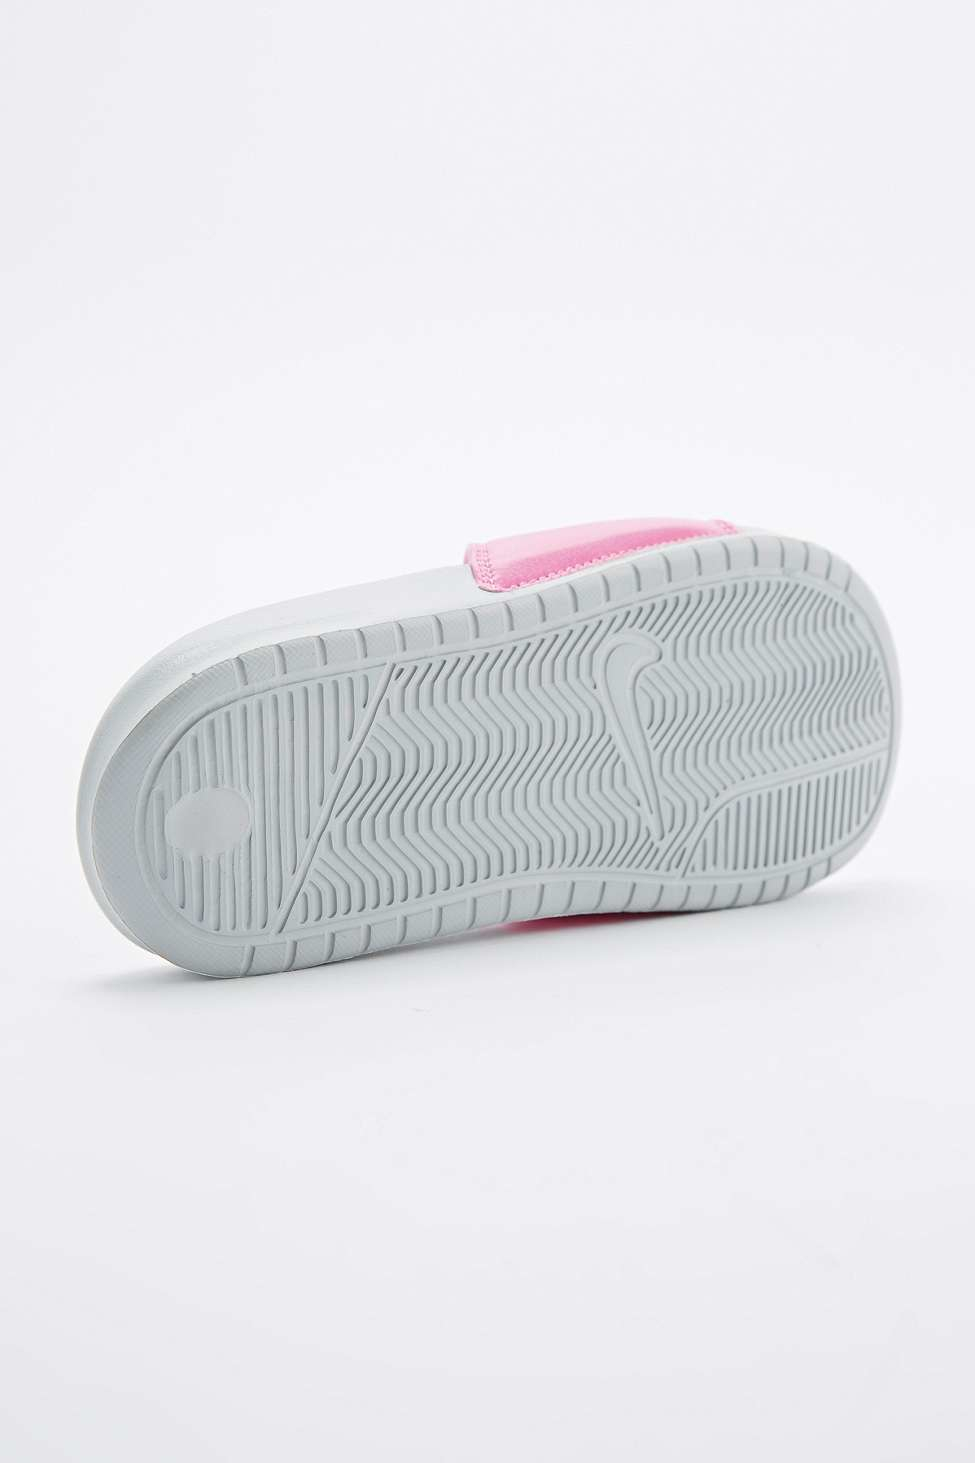 Lyst - Nike Benassi Jd Sliders In Pink in Pink